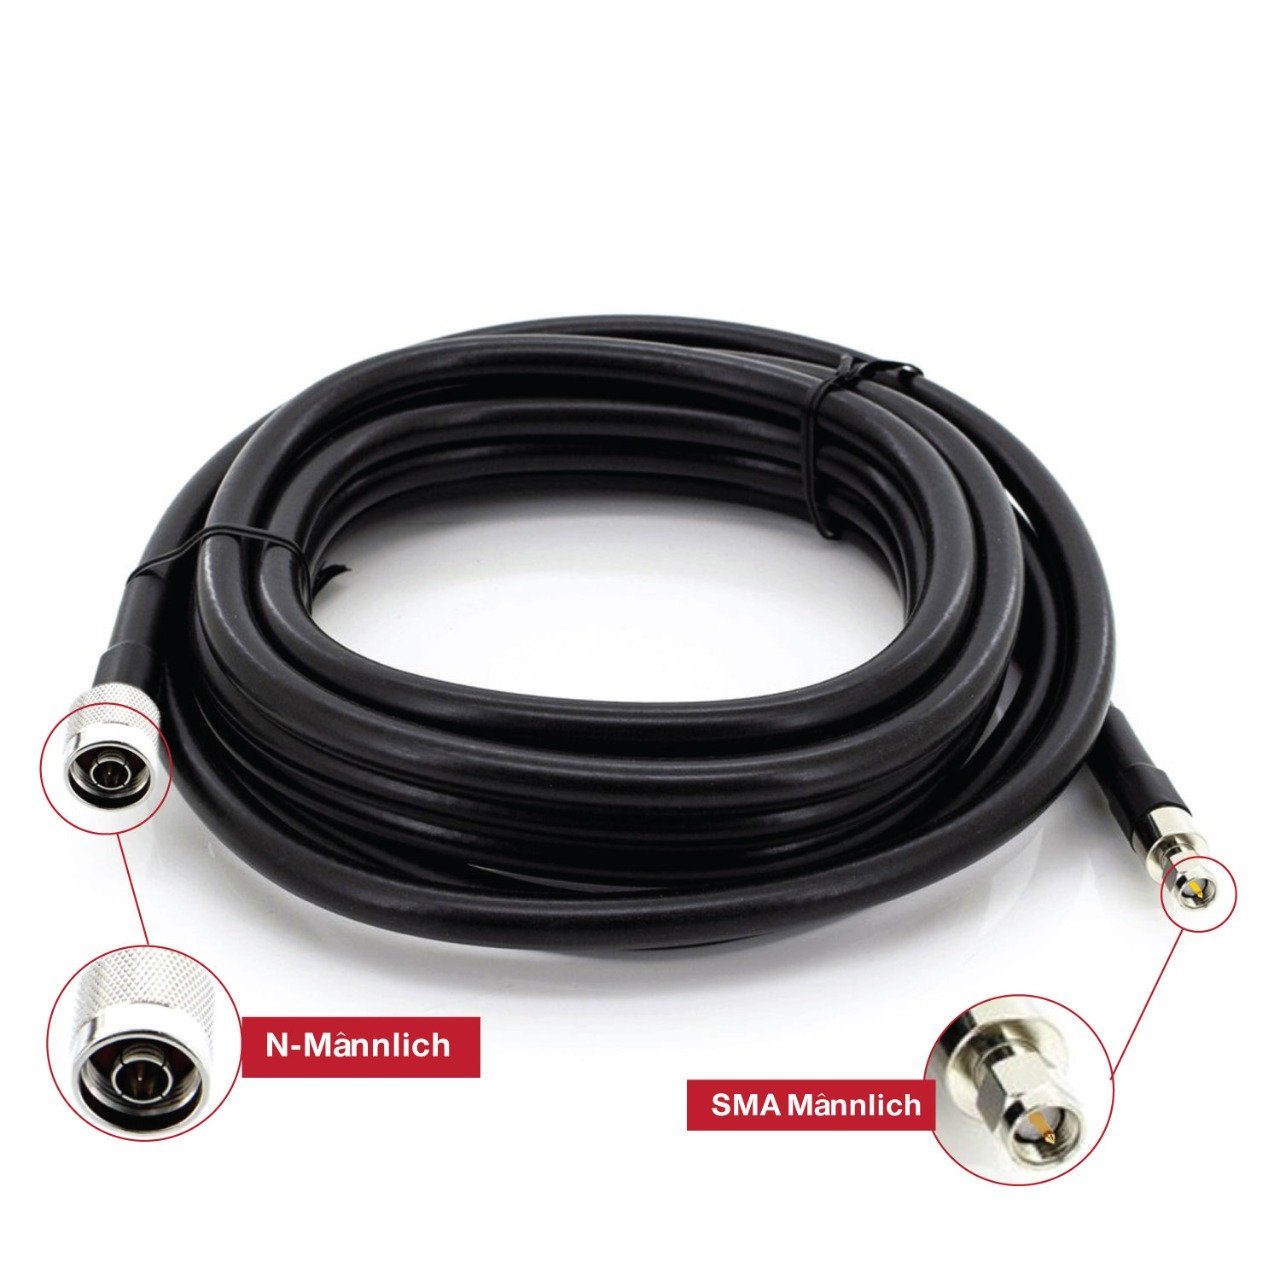 Baker BK-400MM kabel, cm), lte kabel, kabel SMA kabel, Verlängerungskabel, LMR400, 4g N 3g wifi männlich, (200 männlich